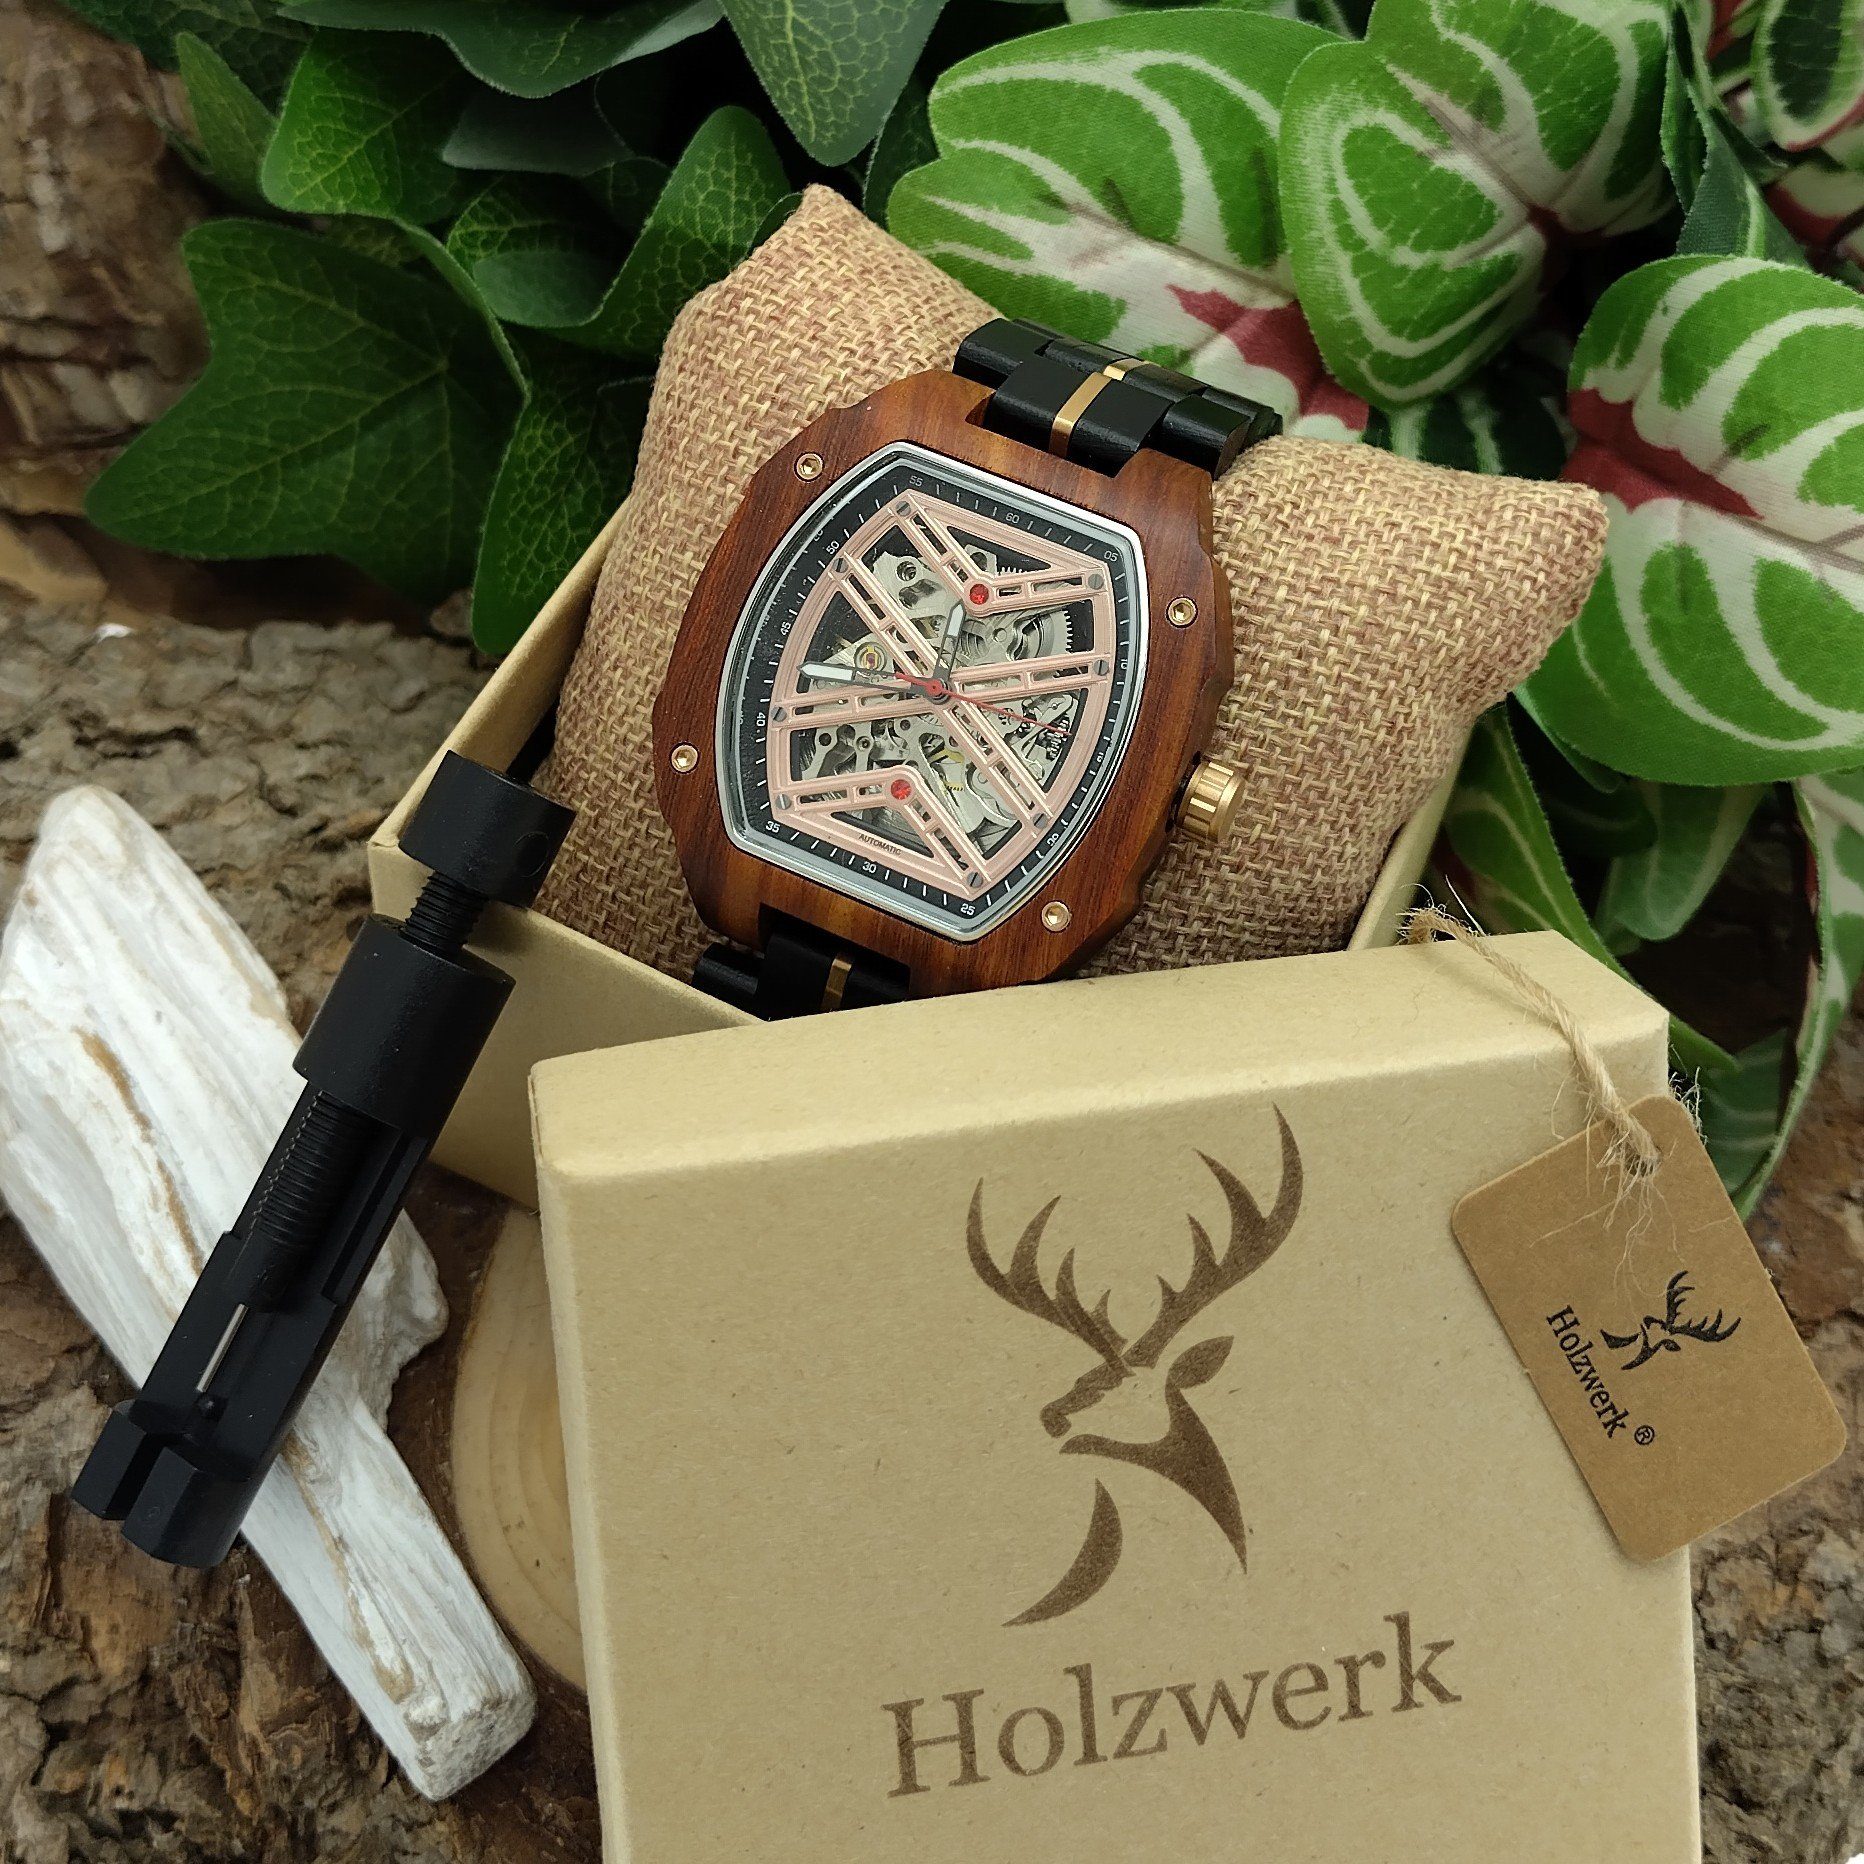 Holzwerk Automatikuhr CALW Tonneau braun rose Herren gold schwarz, Holz Uhr, Armband &